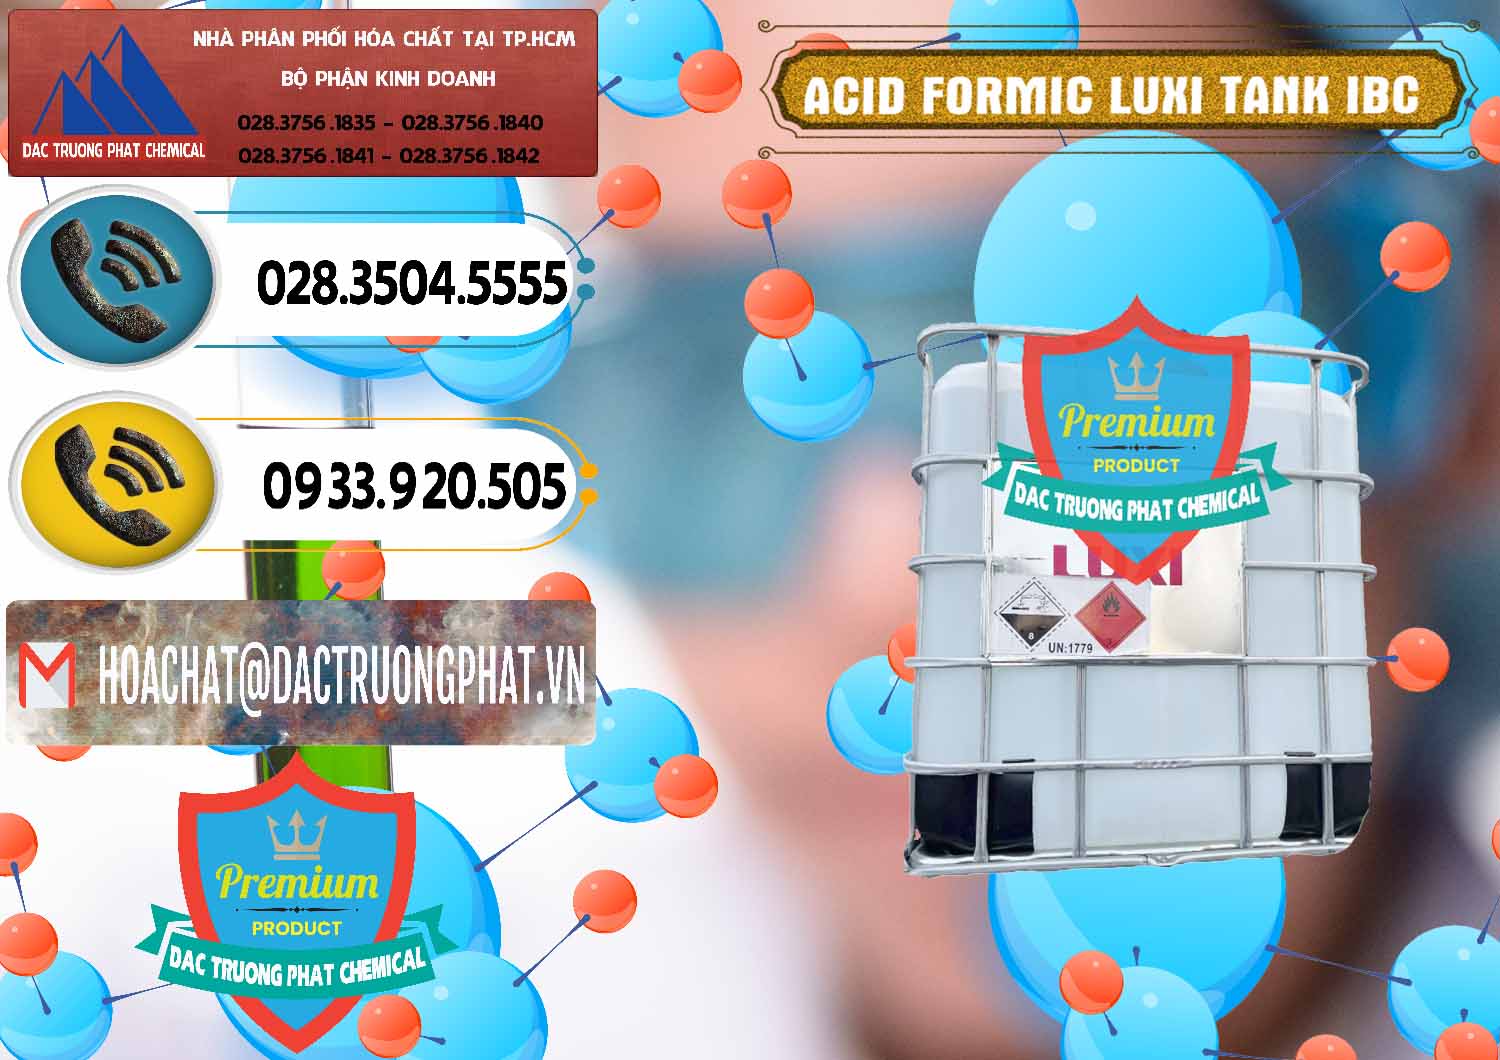 Cty chuyên cung ứng ( bán ) Acid Formic - Acid Formic Tank - Bồn IBC Luxi Trung Quốc China - 0400 - Cty chuyên kinh doanh ( phân phối ) hóa chất tại TP.HCM - hoachatdetnhuom.vn